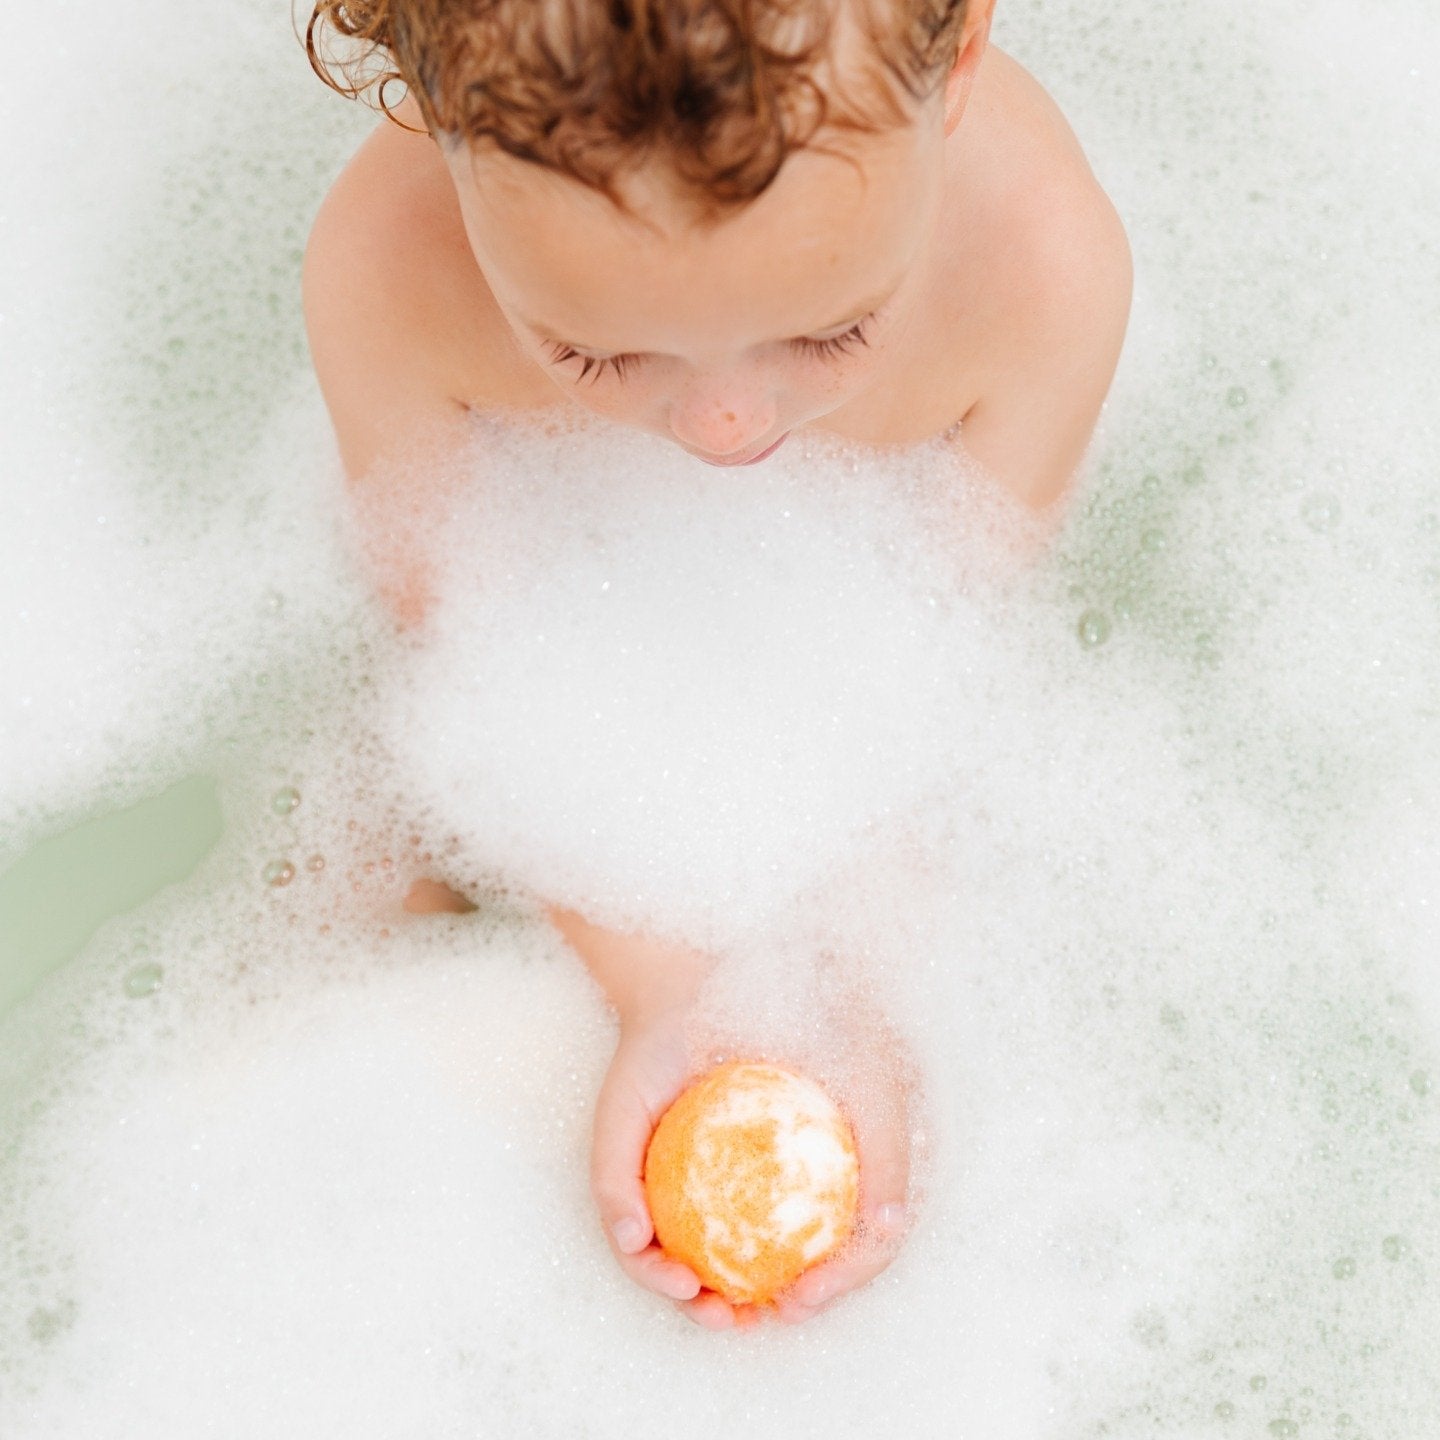 Child holding bath bomb in sudsy bath tub